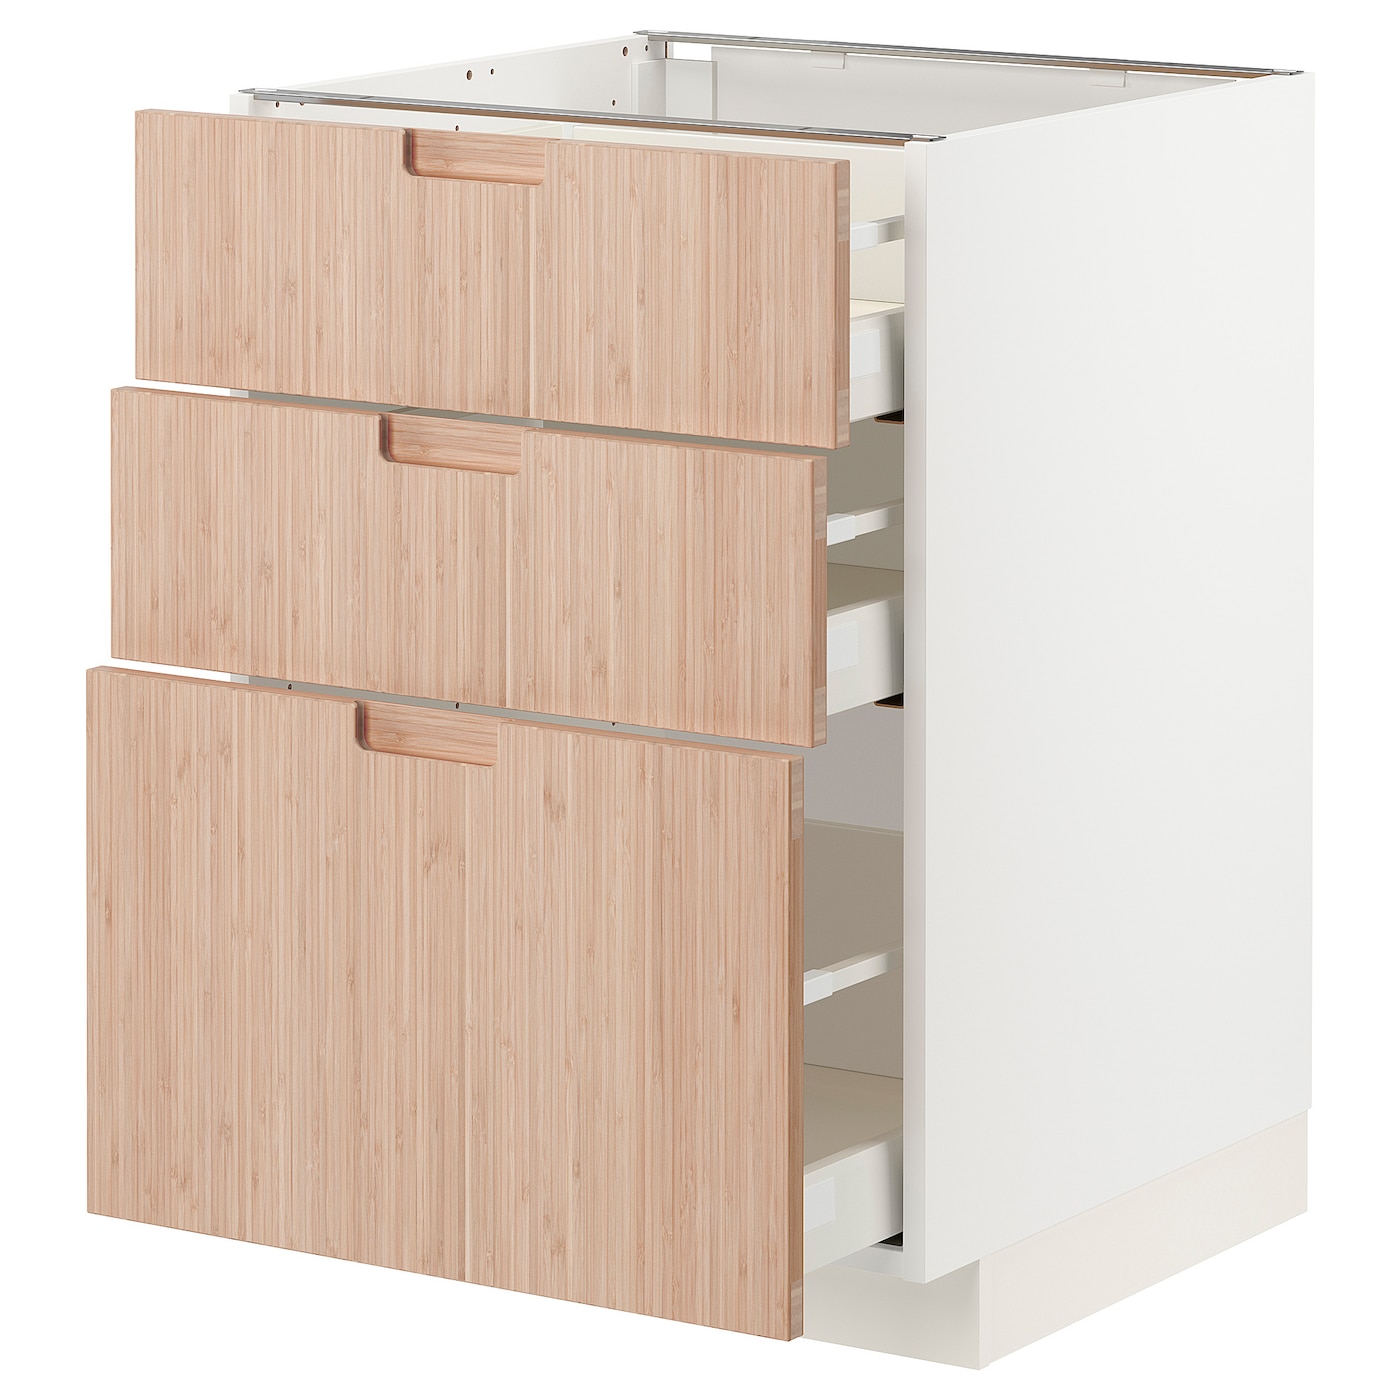 Напольный кухонный шкаф  - IKEA METOD MAXIMERA, 88x62x60см, белый/светло-коричневый, МЕТОД МАКСИМЕРА ИКЕА